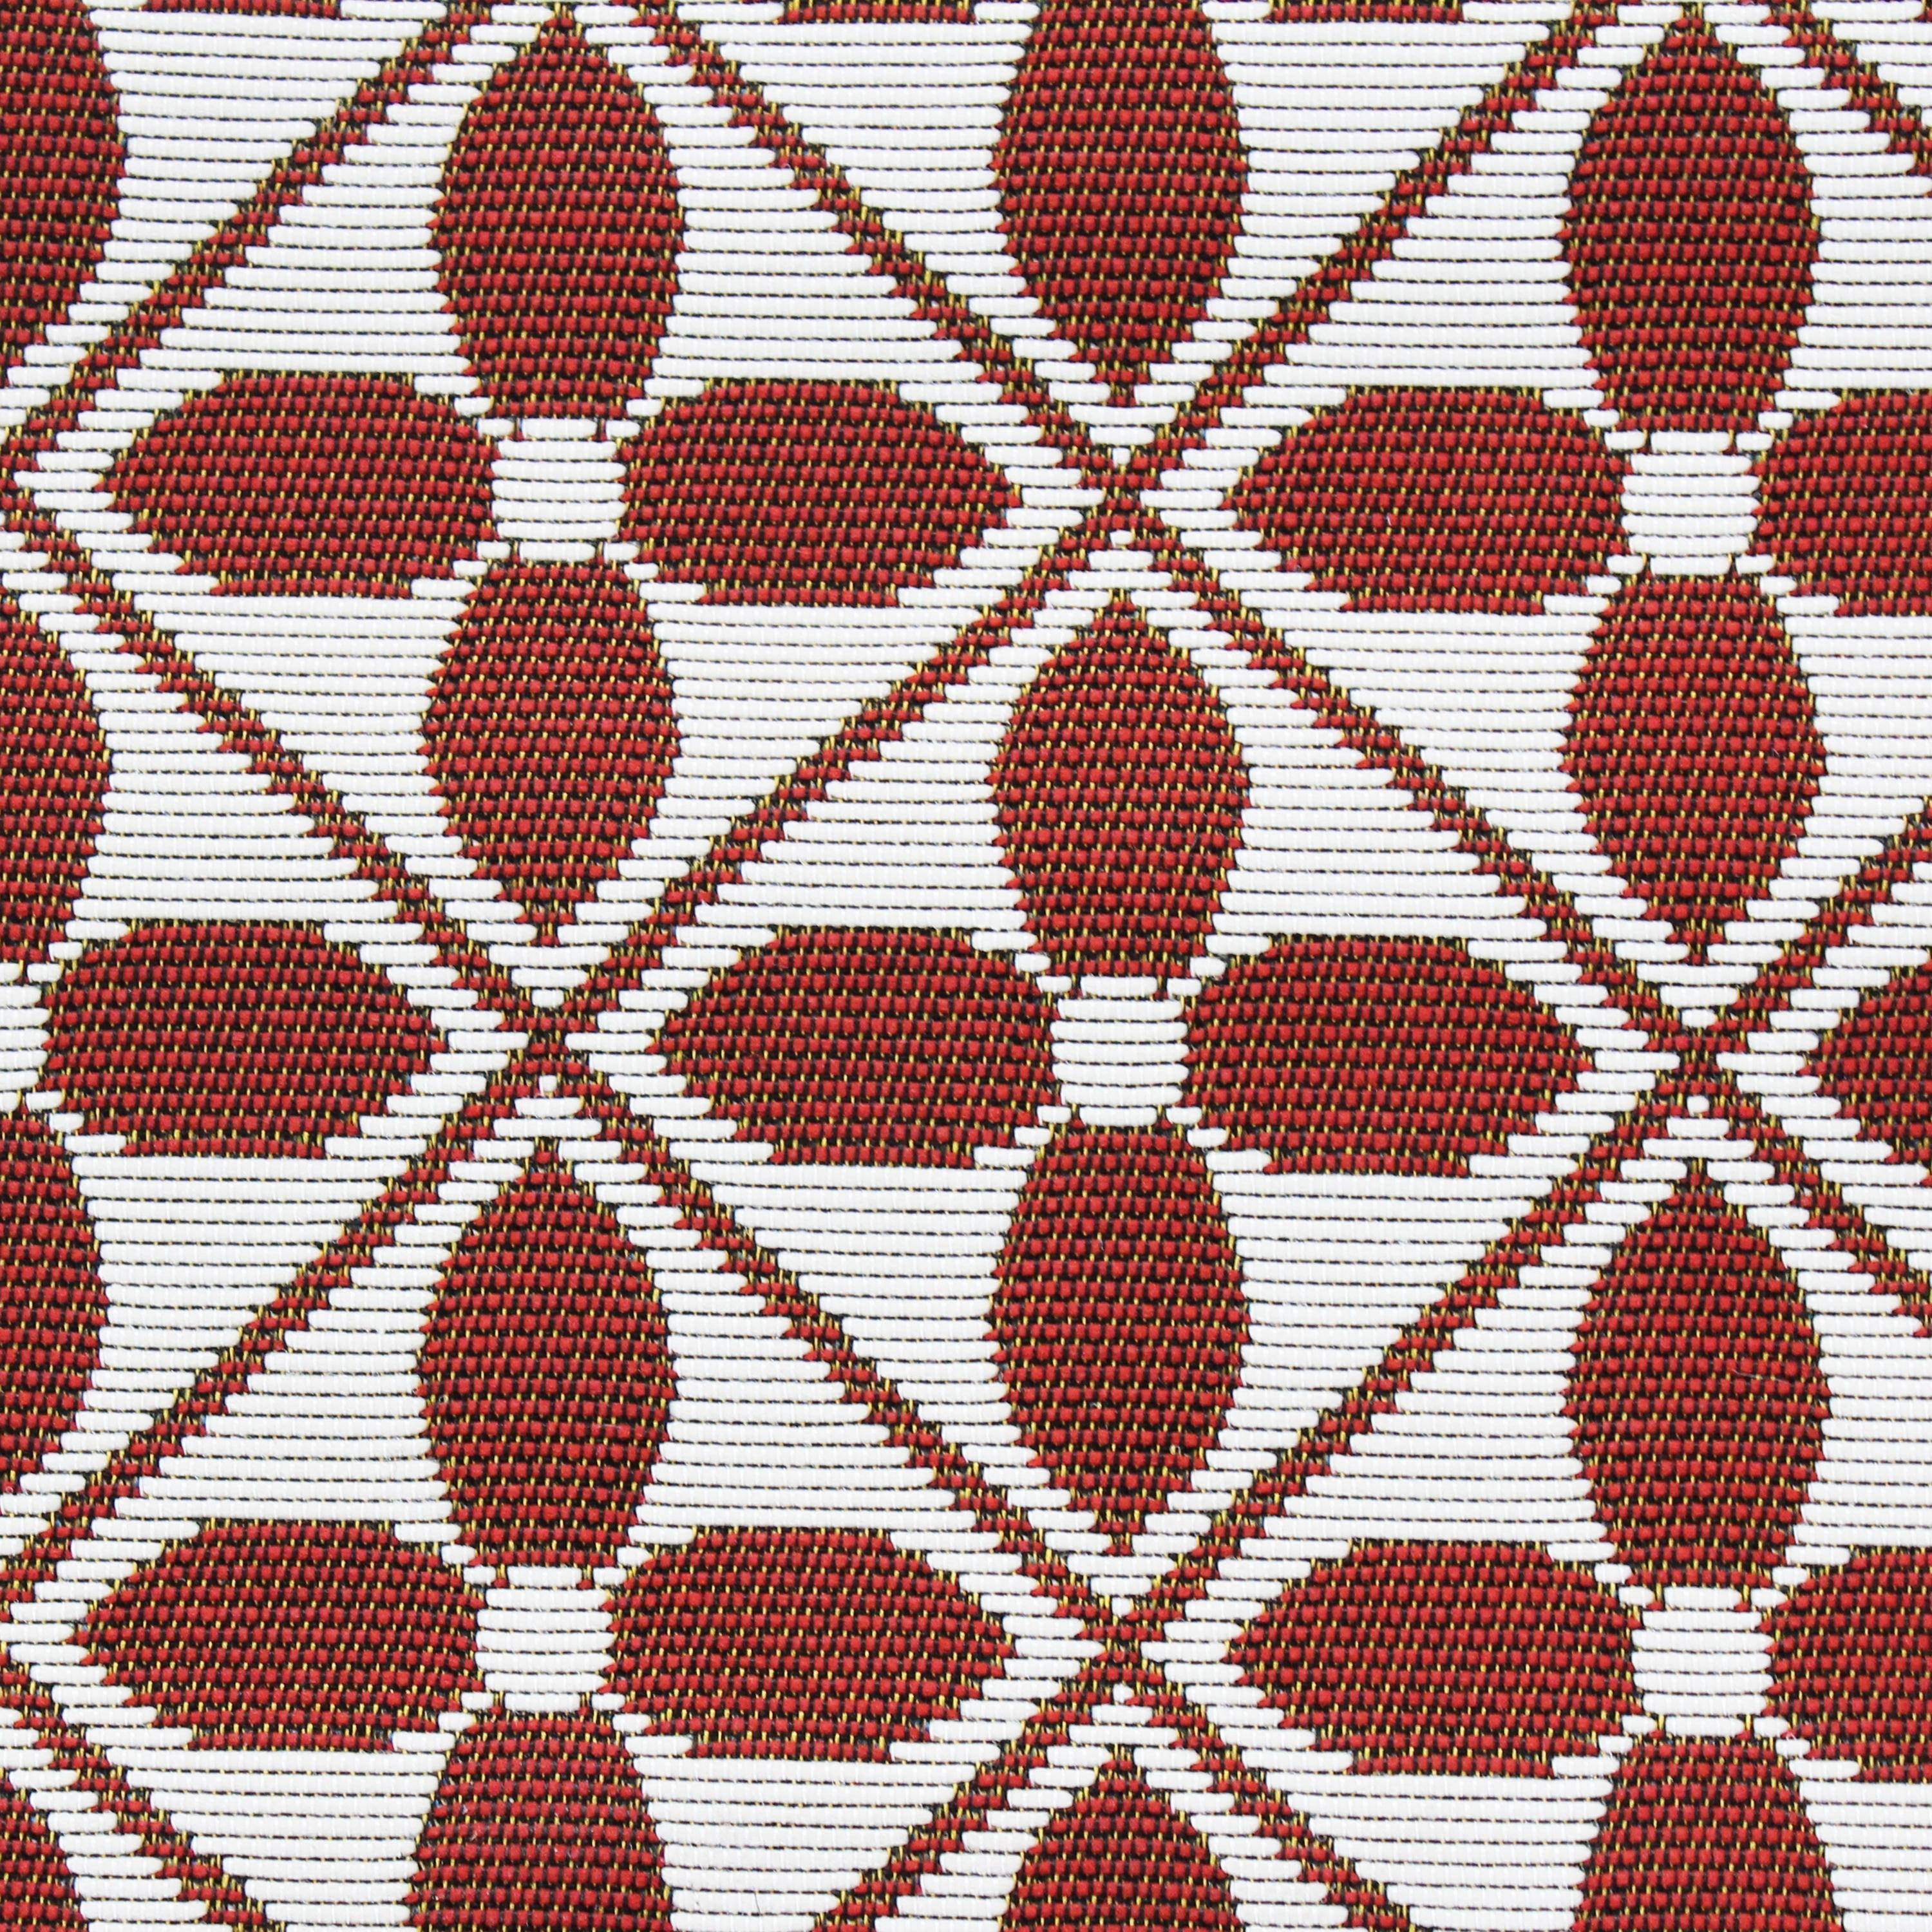 Outdoor rug - 160x230cm - tile print, rectangular, indoor/outdoor use - Terracotta Photo4